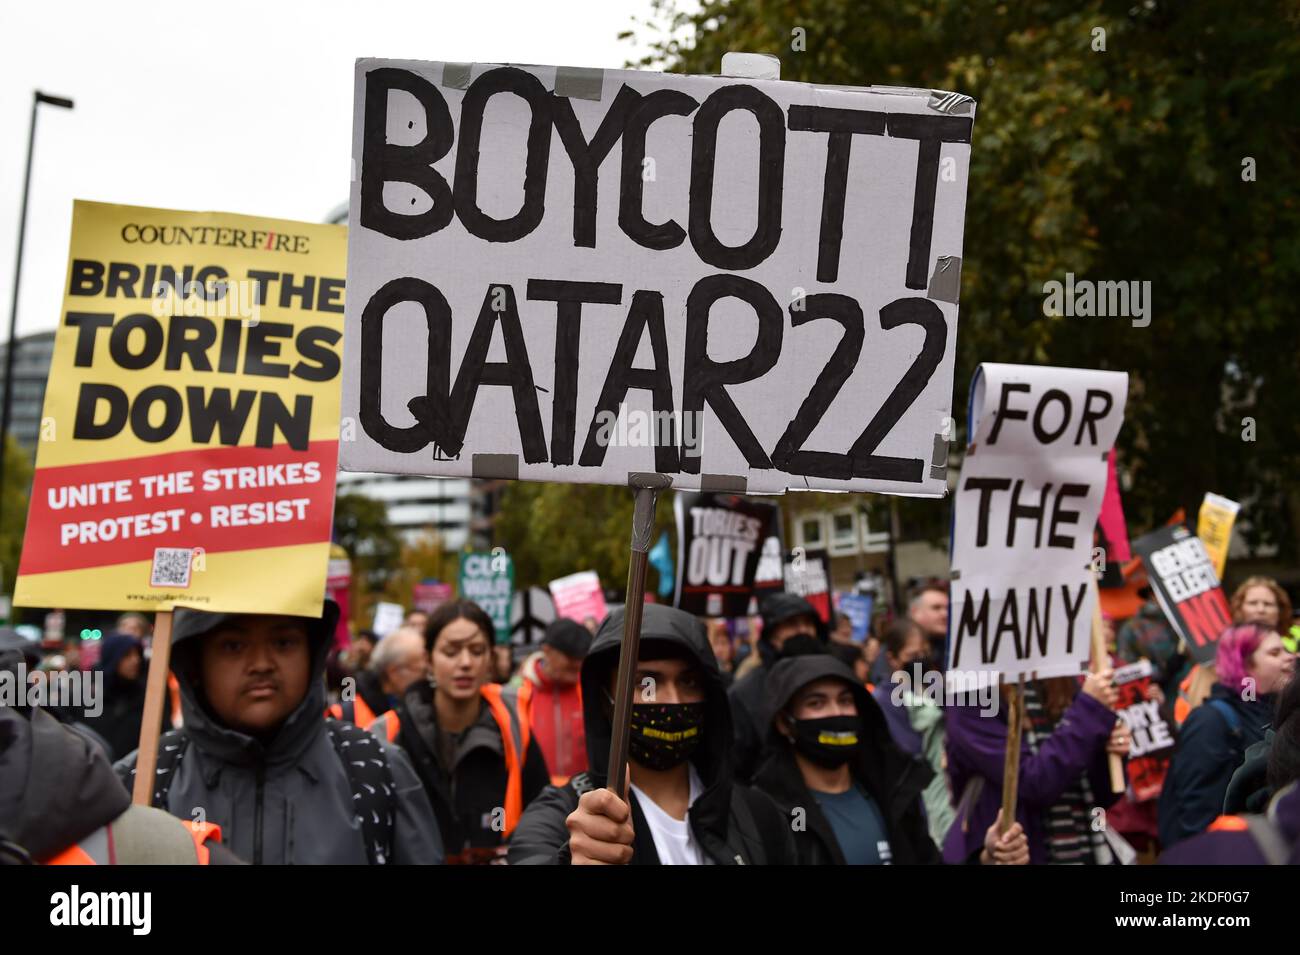 Un protester ha un cartello che recita Boycott Qatar 22. I manifestanti anti anti-governativo e anti-tari si sono riuniti a Embankment e hanno marciato attraverso Westminster per chiedere le elezioni generali. Foto Stock